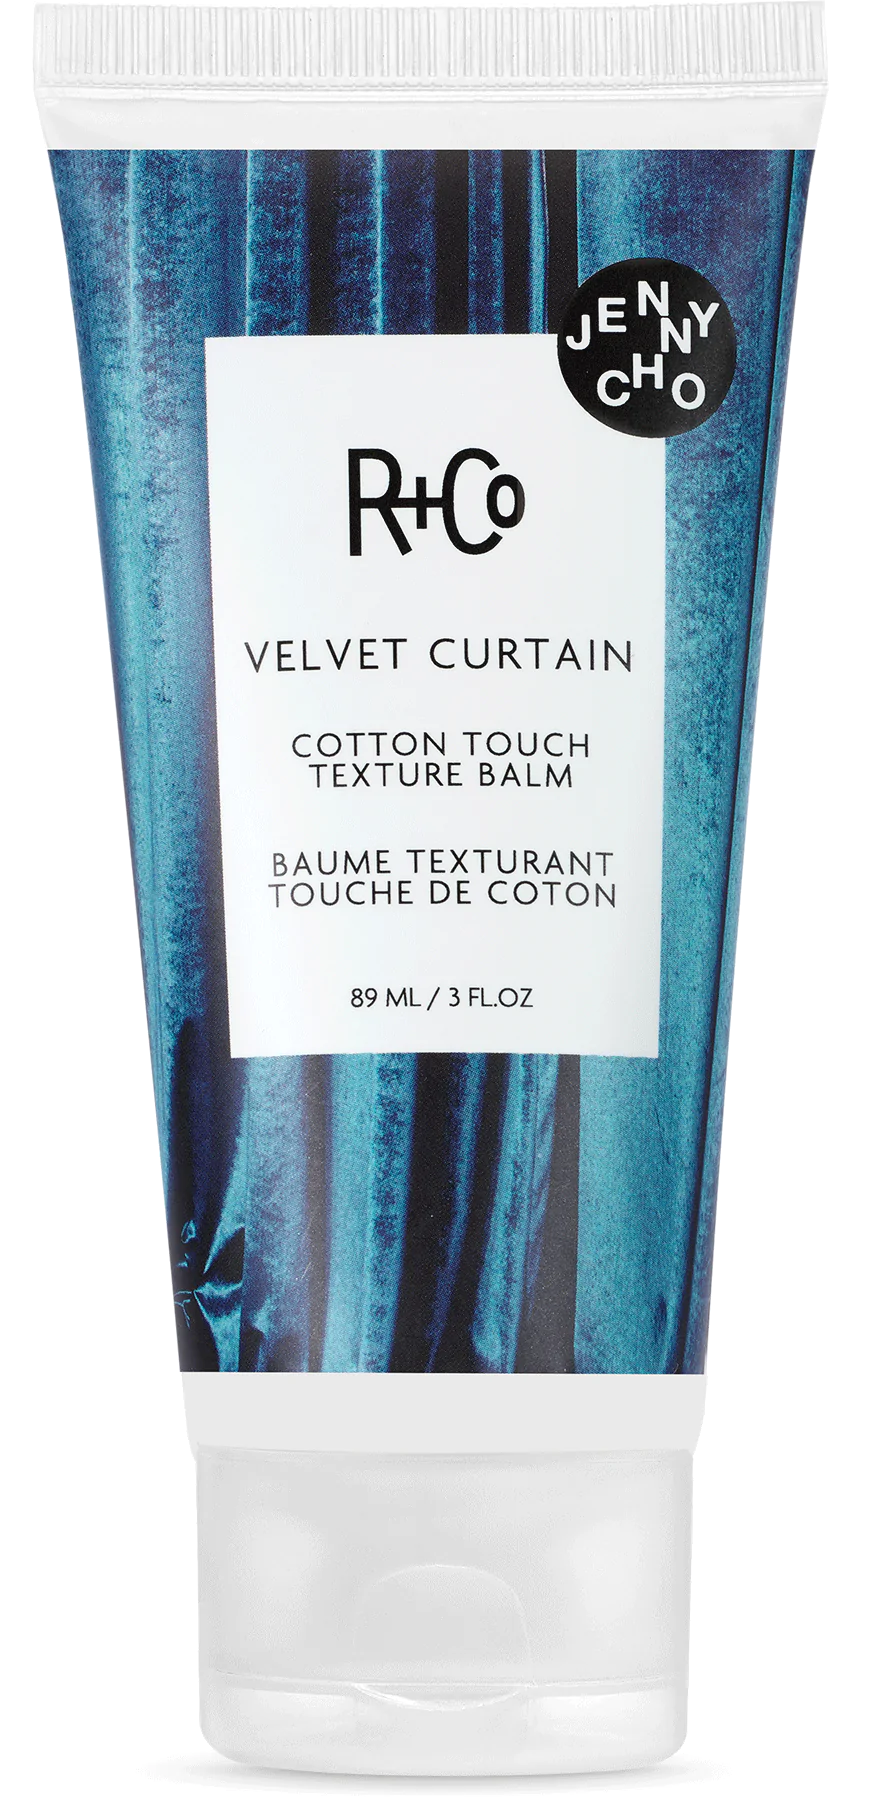 R + Co Velvet Curtain Texture Balm